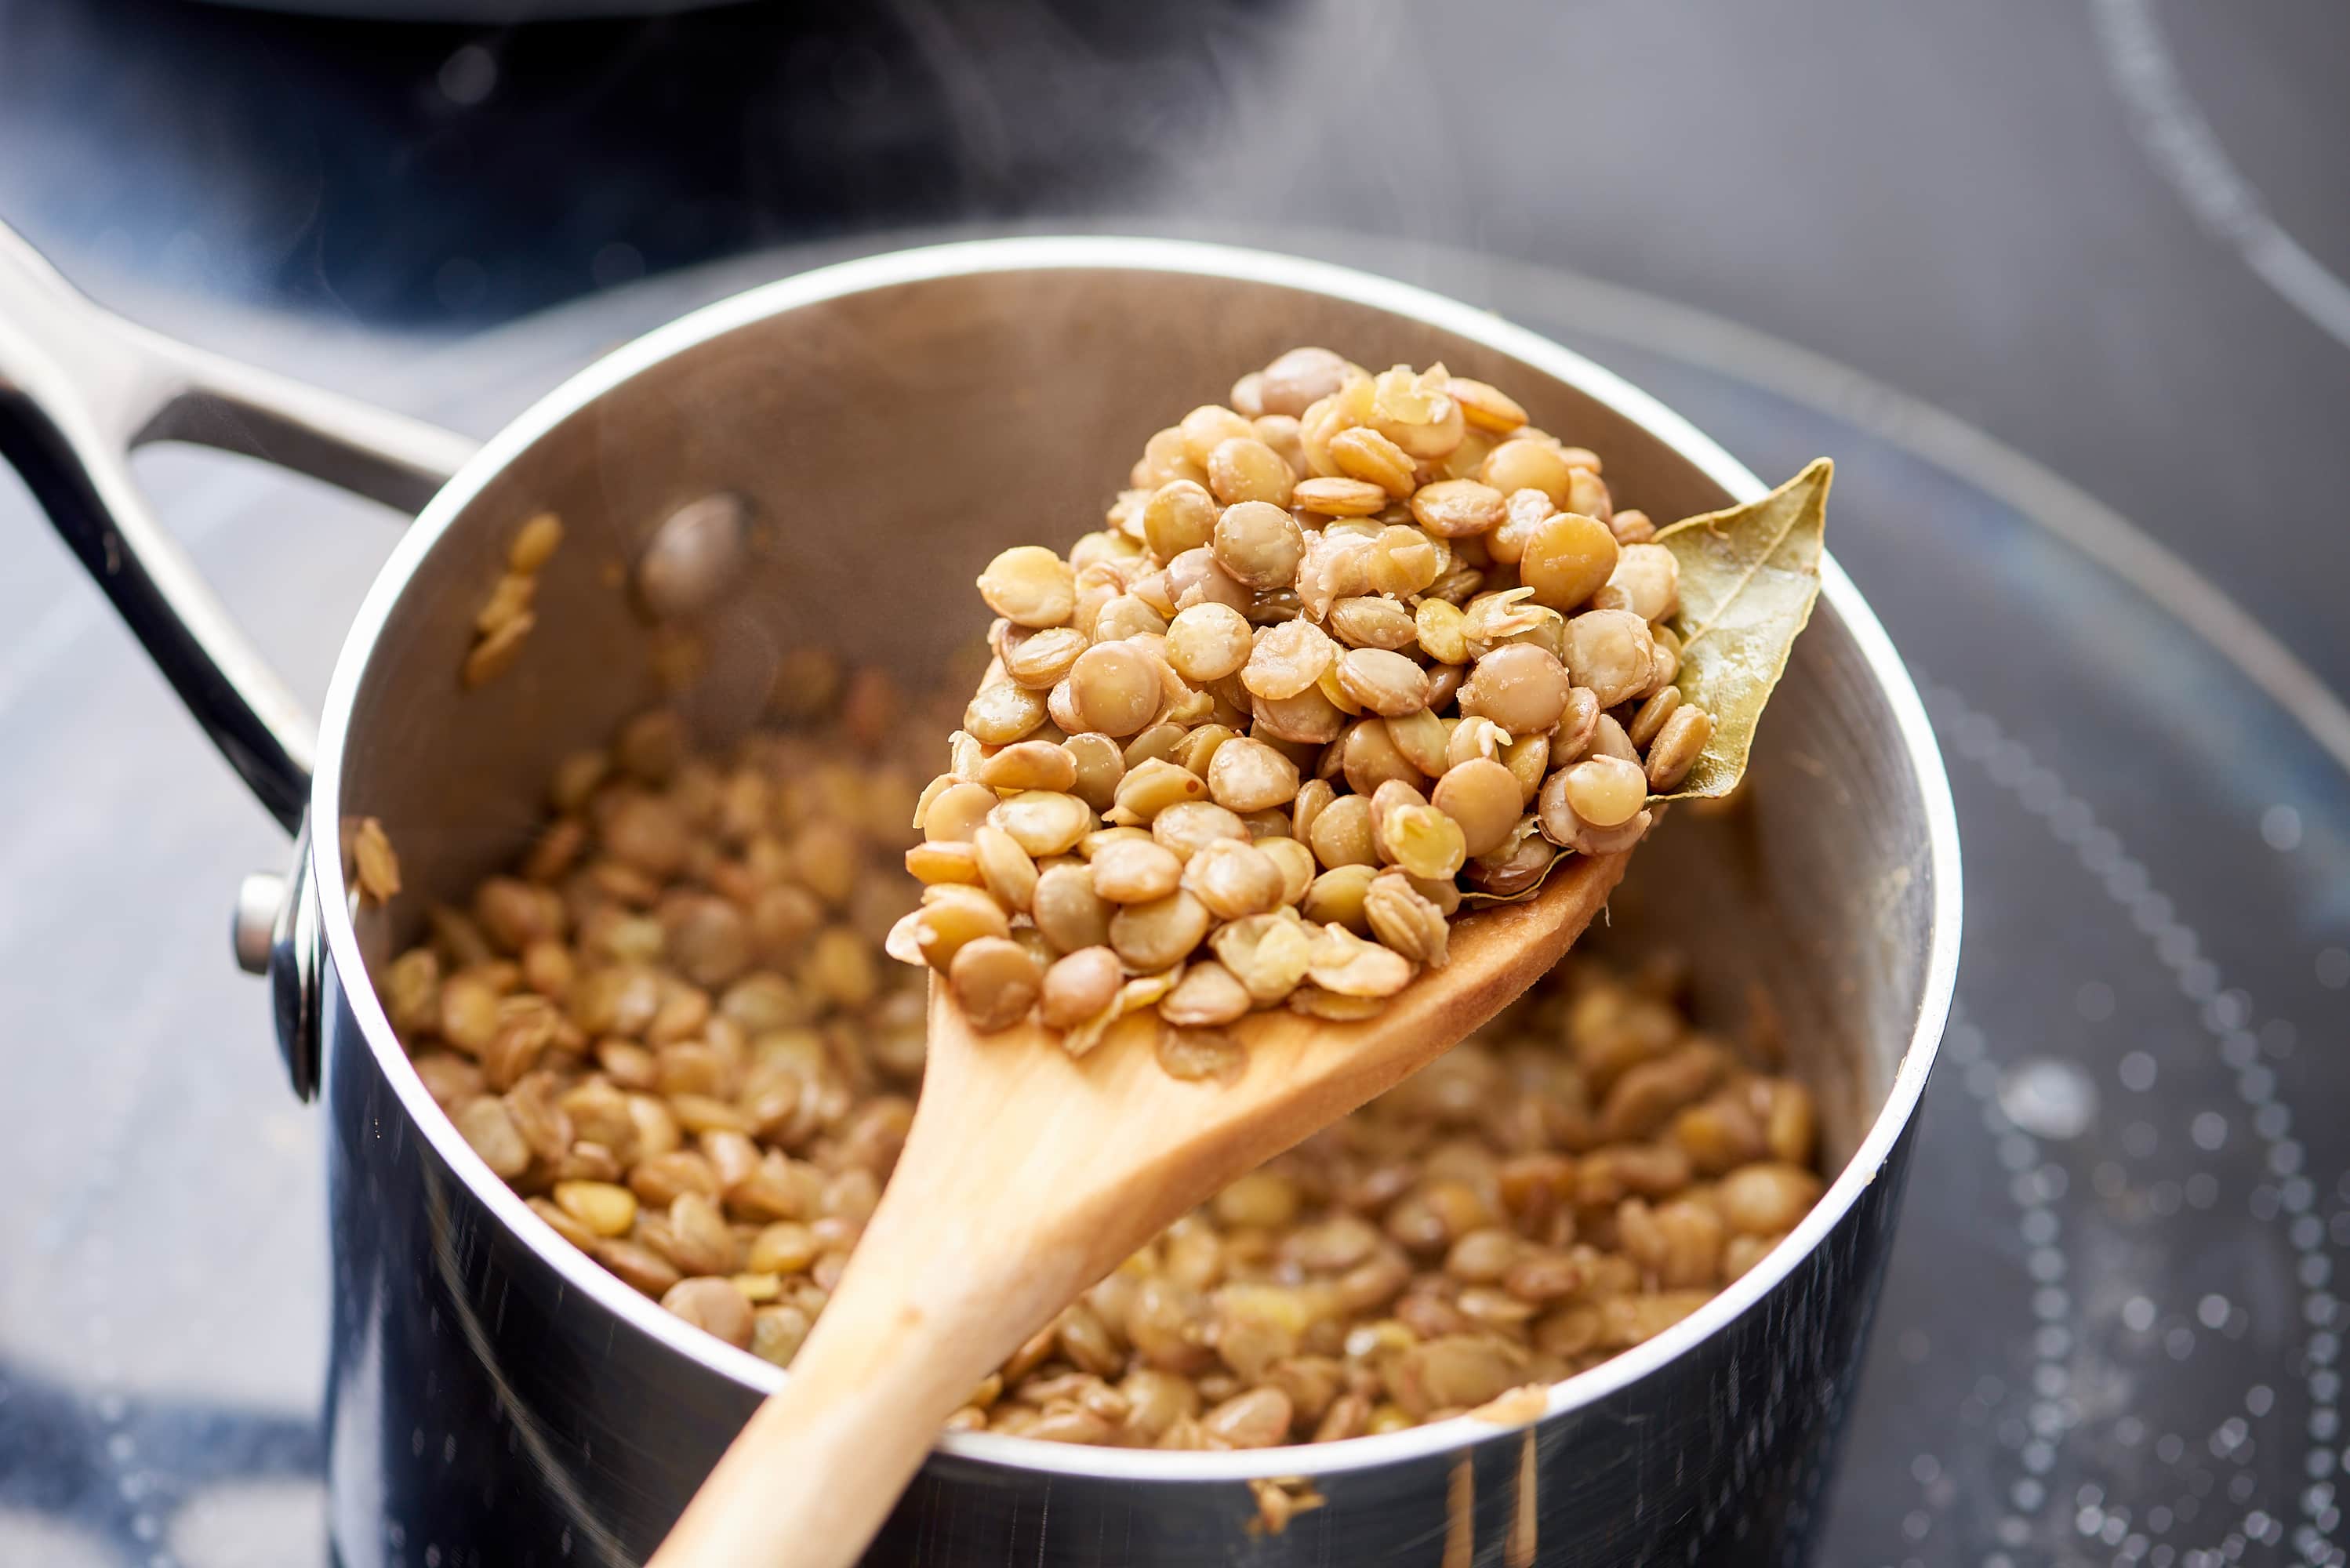 Image result for lentils